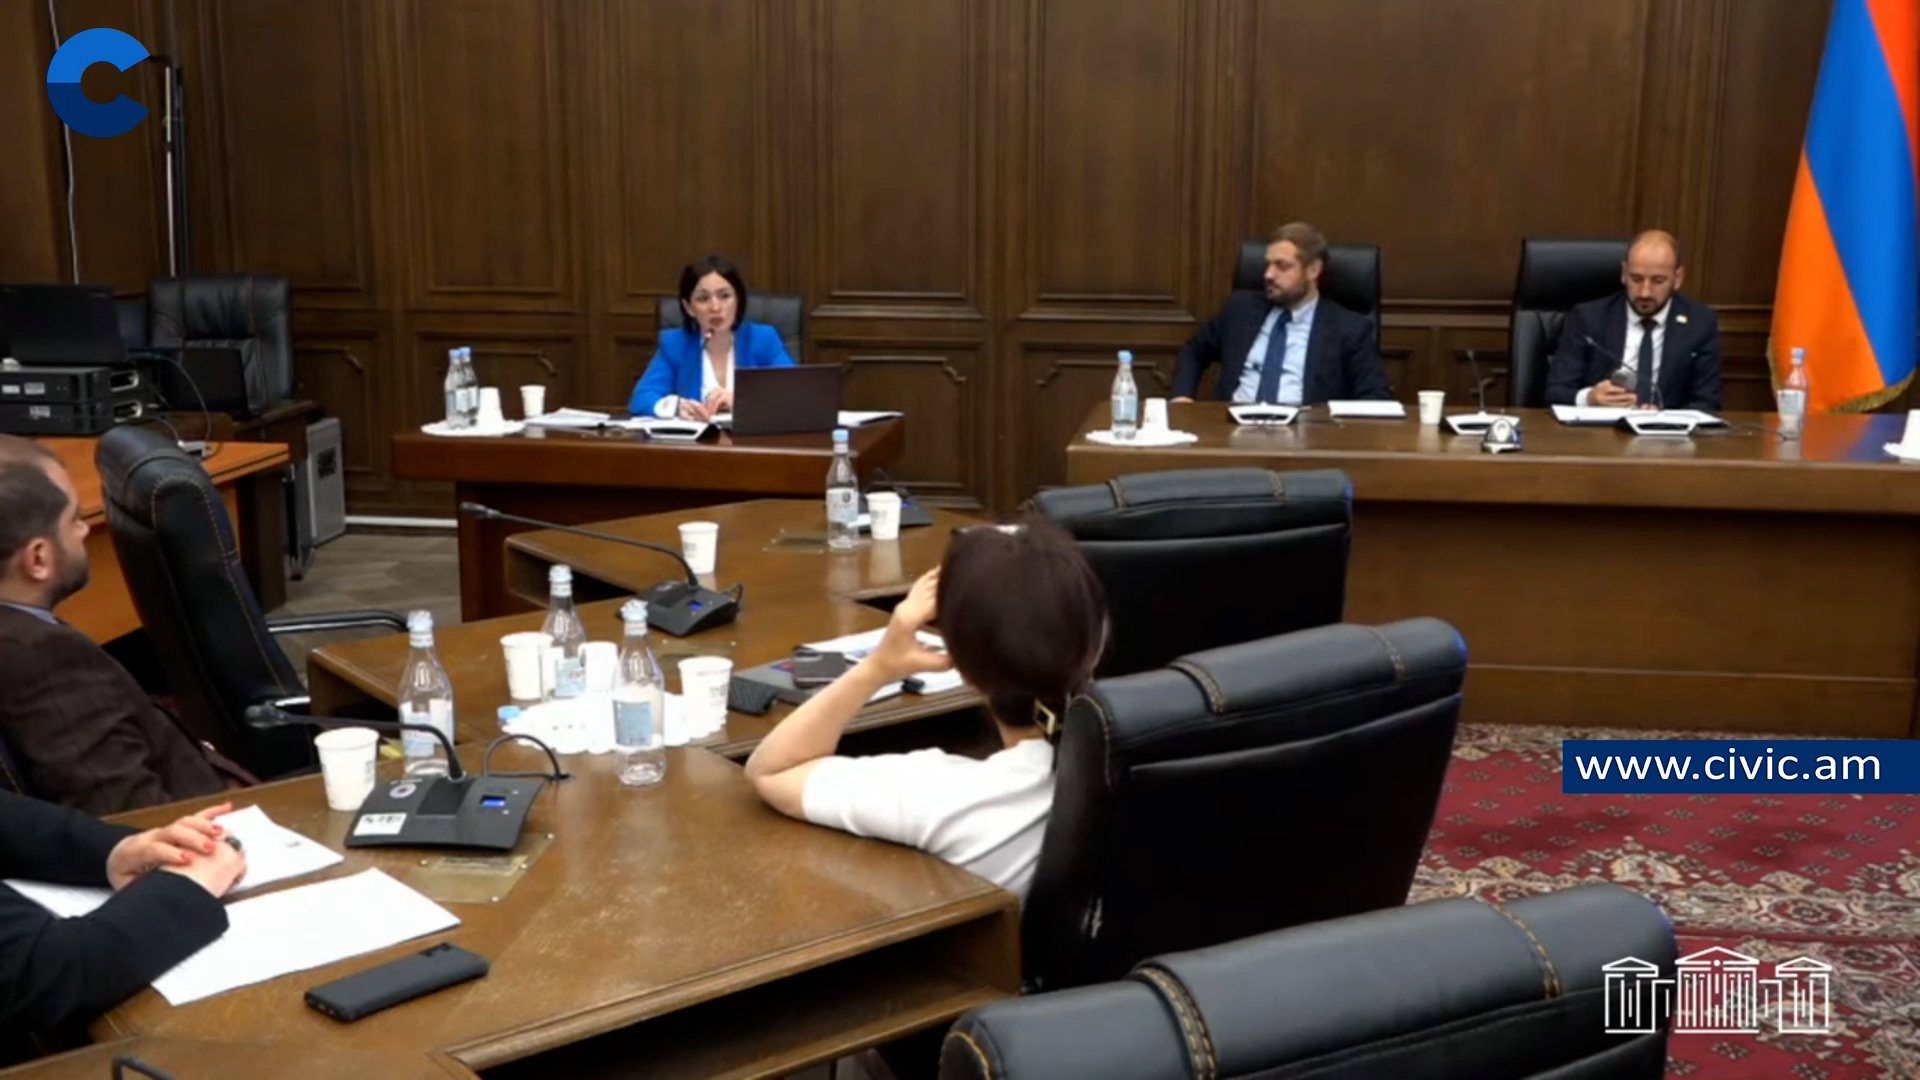 ՀՀ ԱԺ մշտական հանձնաժողովների համատեղ նիստ․ ուղիղ